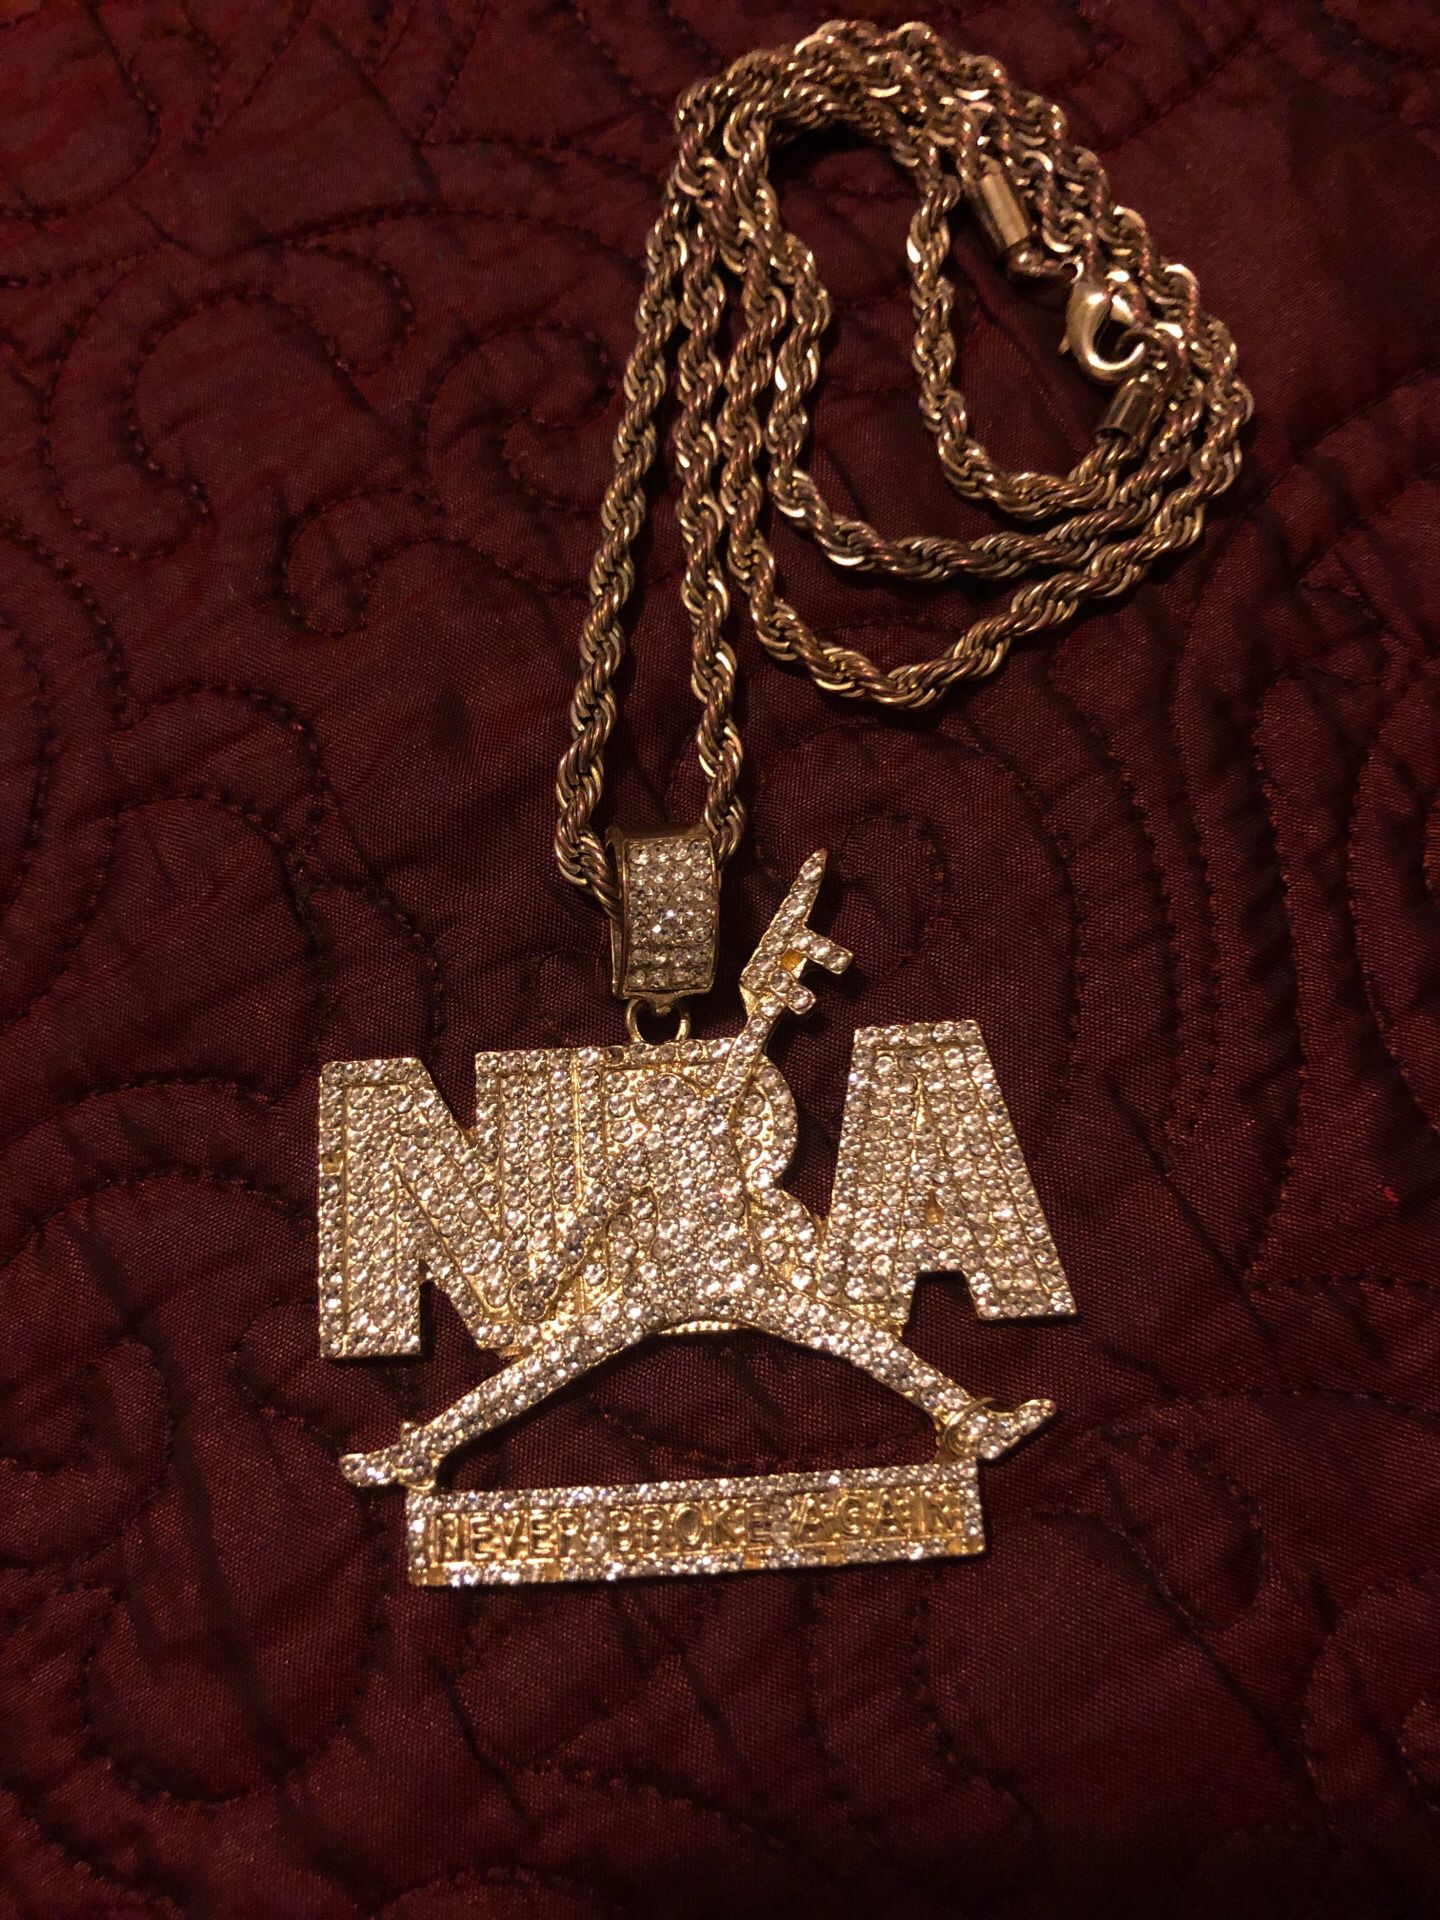 NBA Youngboy (Never Broke Again) chain